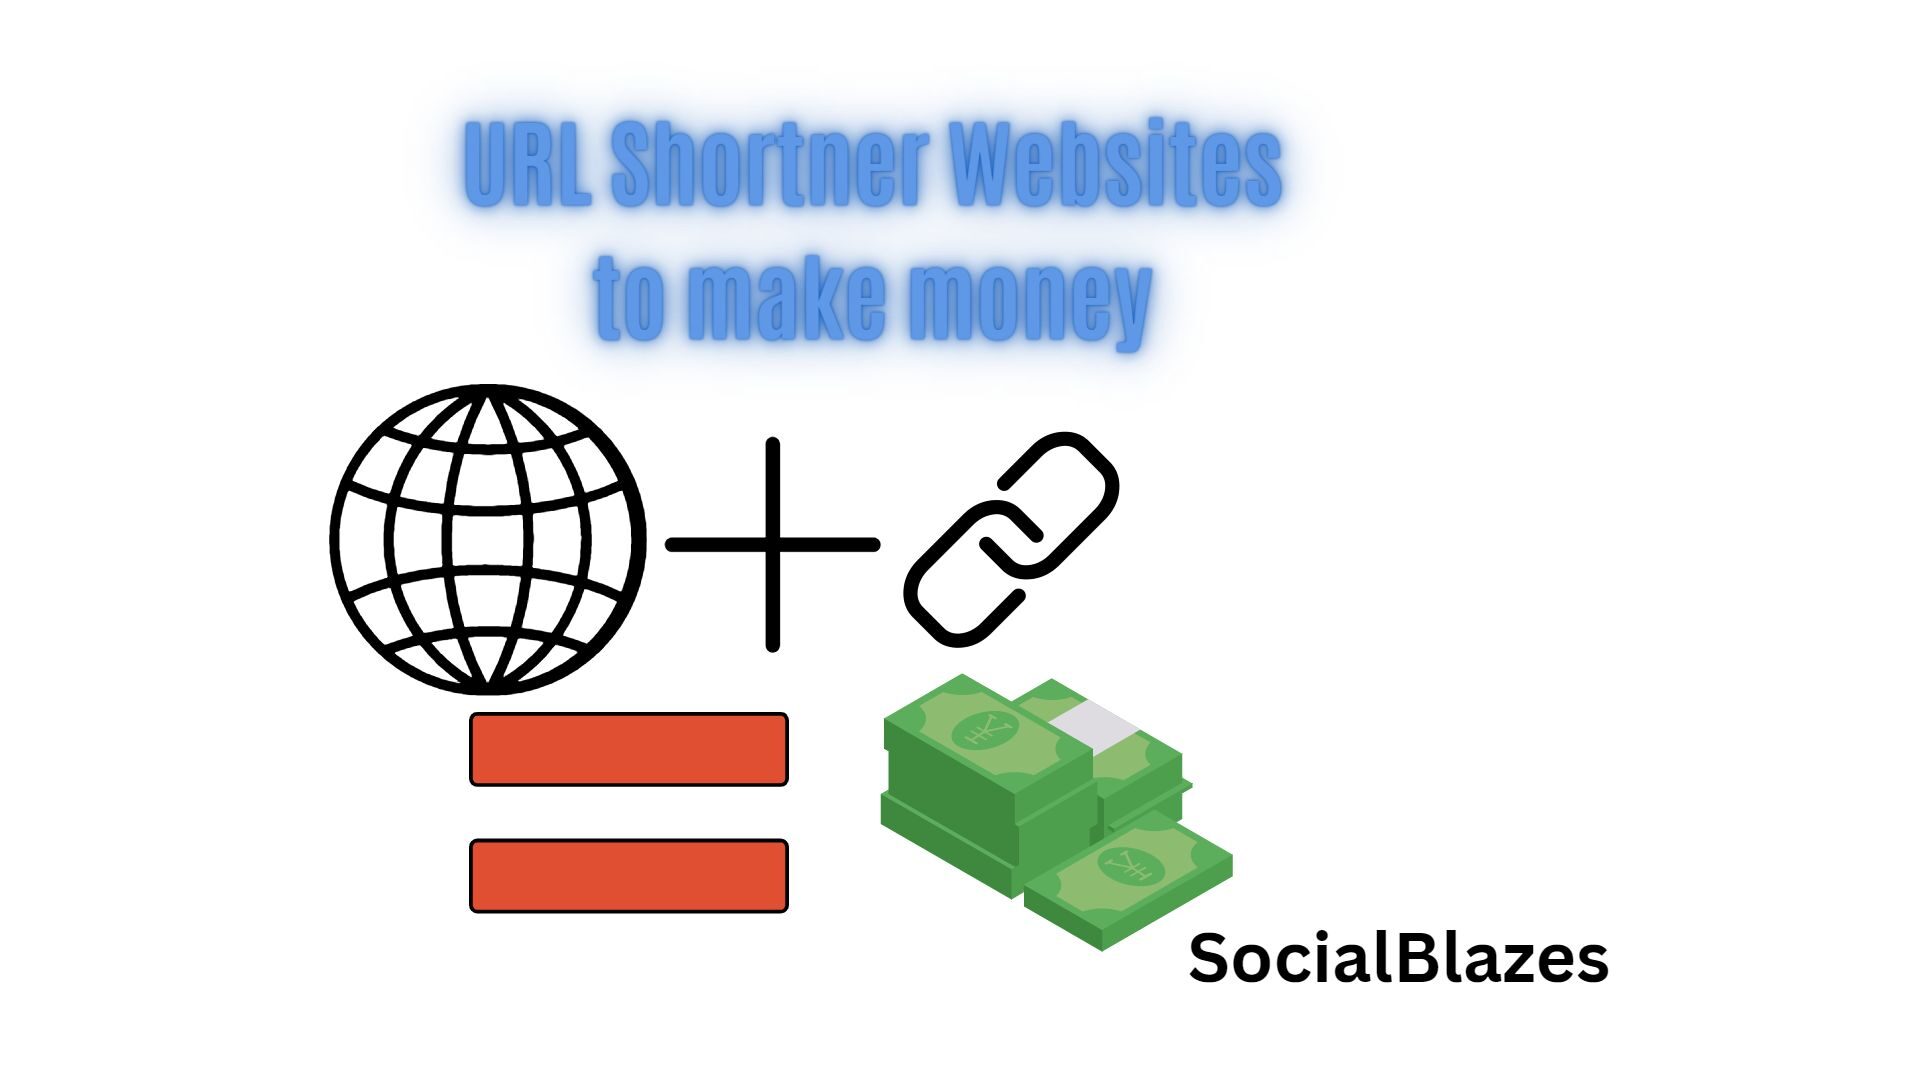 url shortener websites